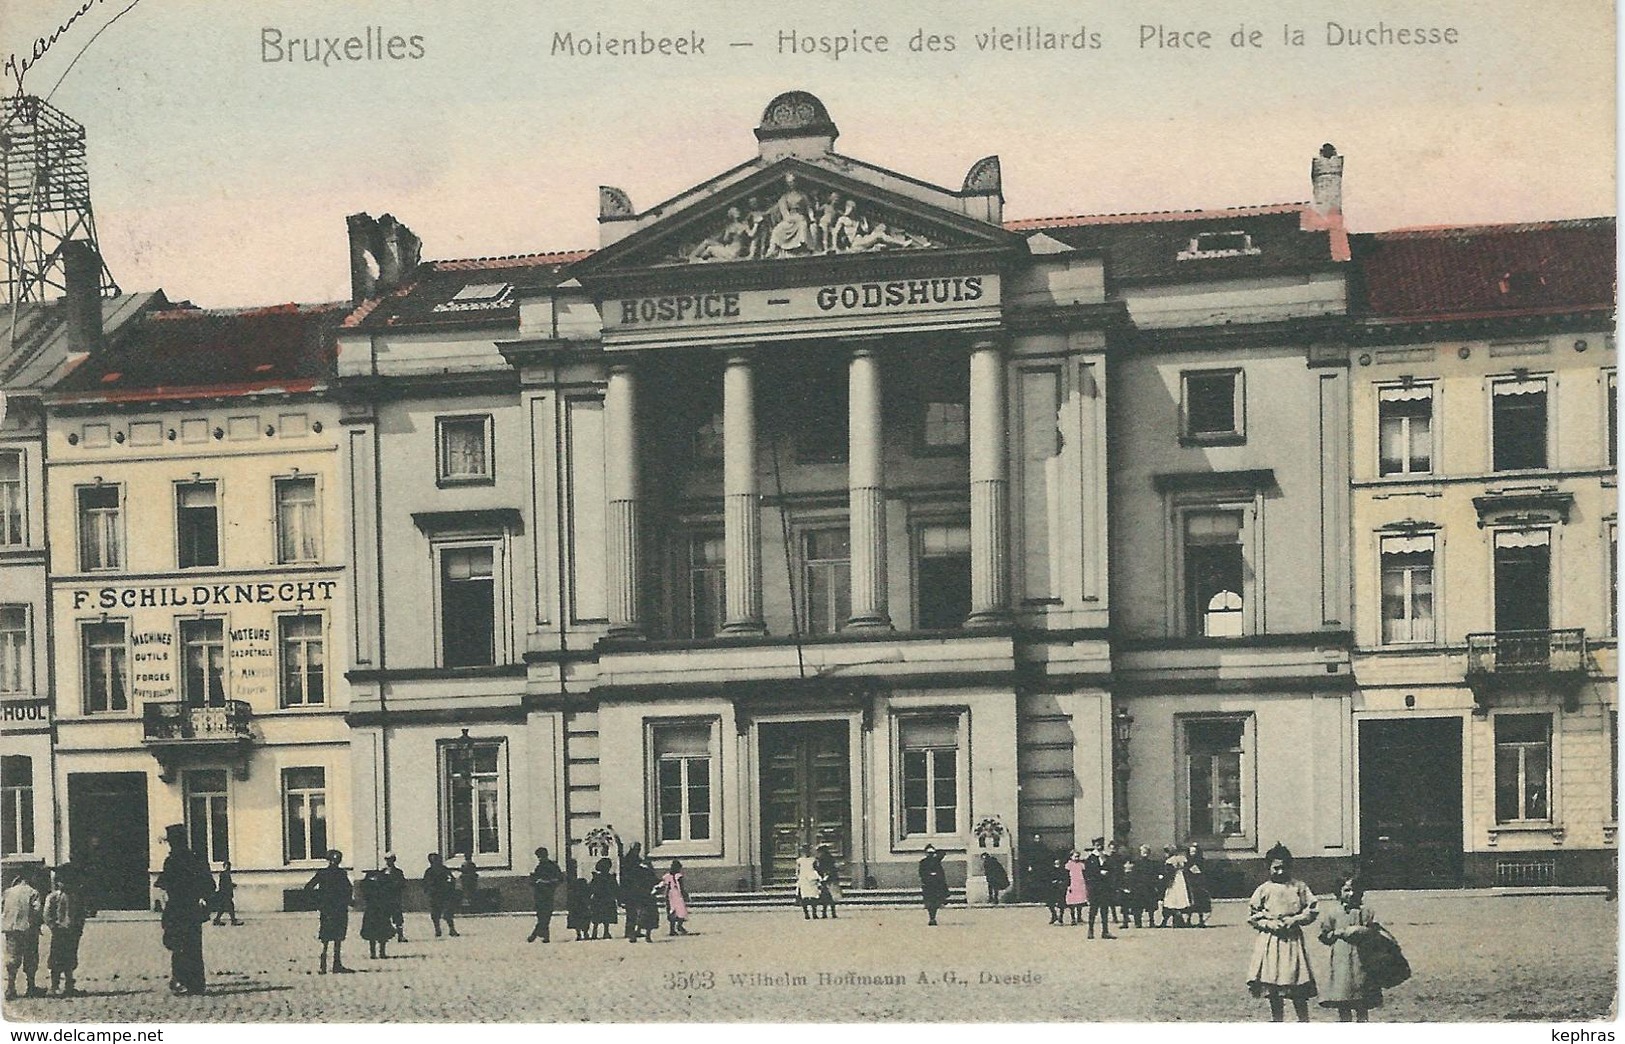 BRUXELLES - MOLENBEEK : Hospice Des Vieillards - Place De La Duchesse - TRES RARE COLORISEE Cachet De La Poste 1904 - St-Jans-Molenbeek - Molenbeek-St-Jean